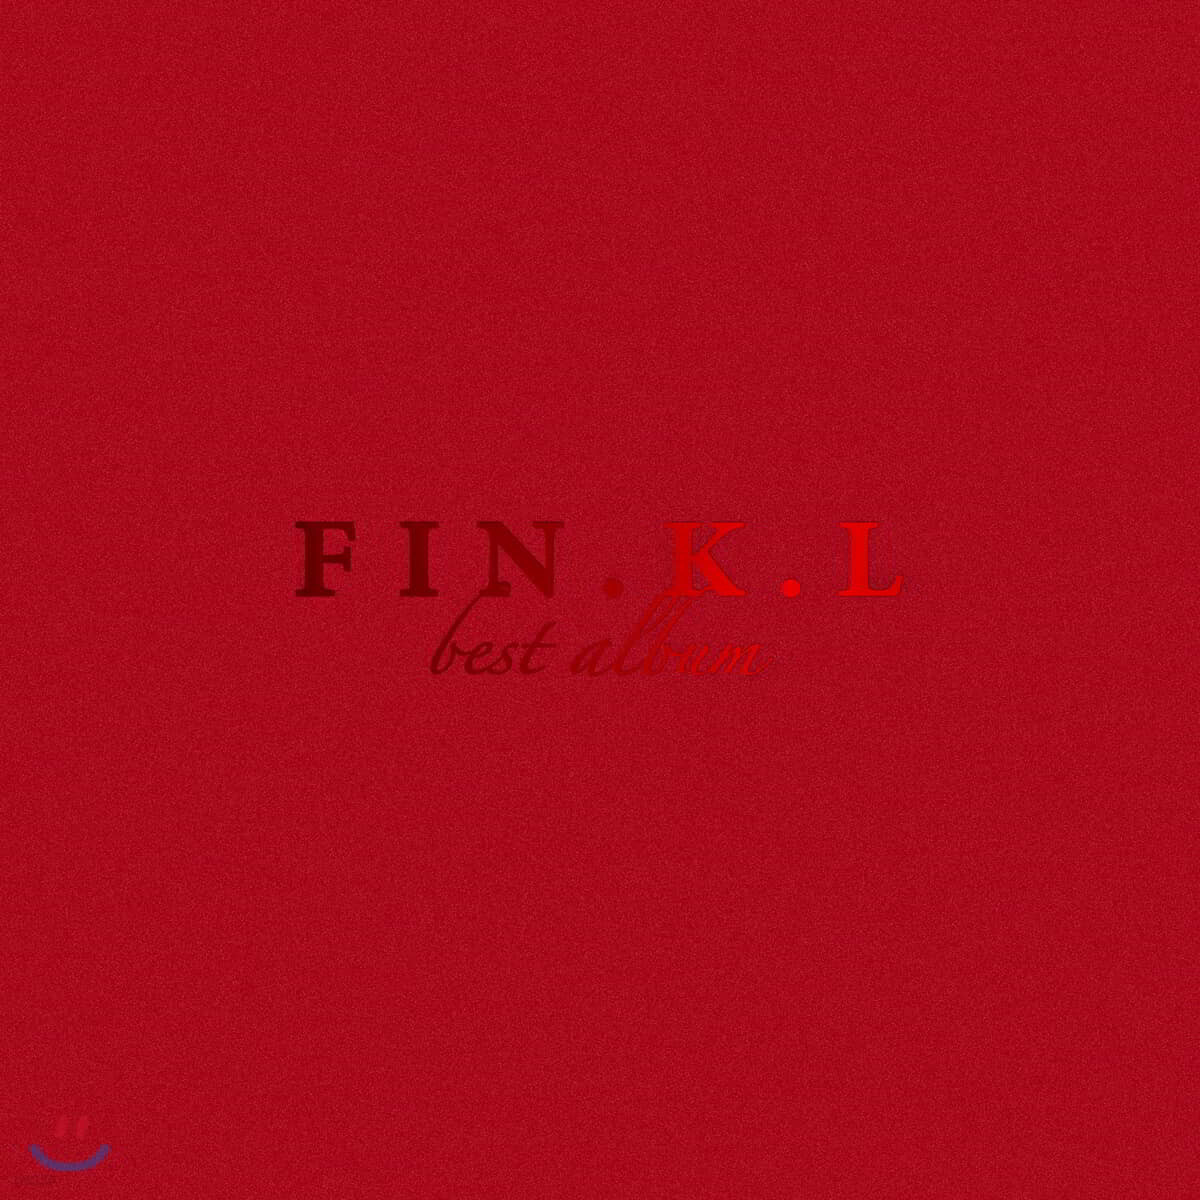 핑클 (Fin.K.L) - FIN.K.L Best Album [LP+CD]